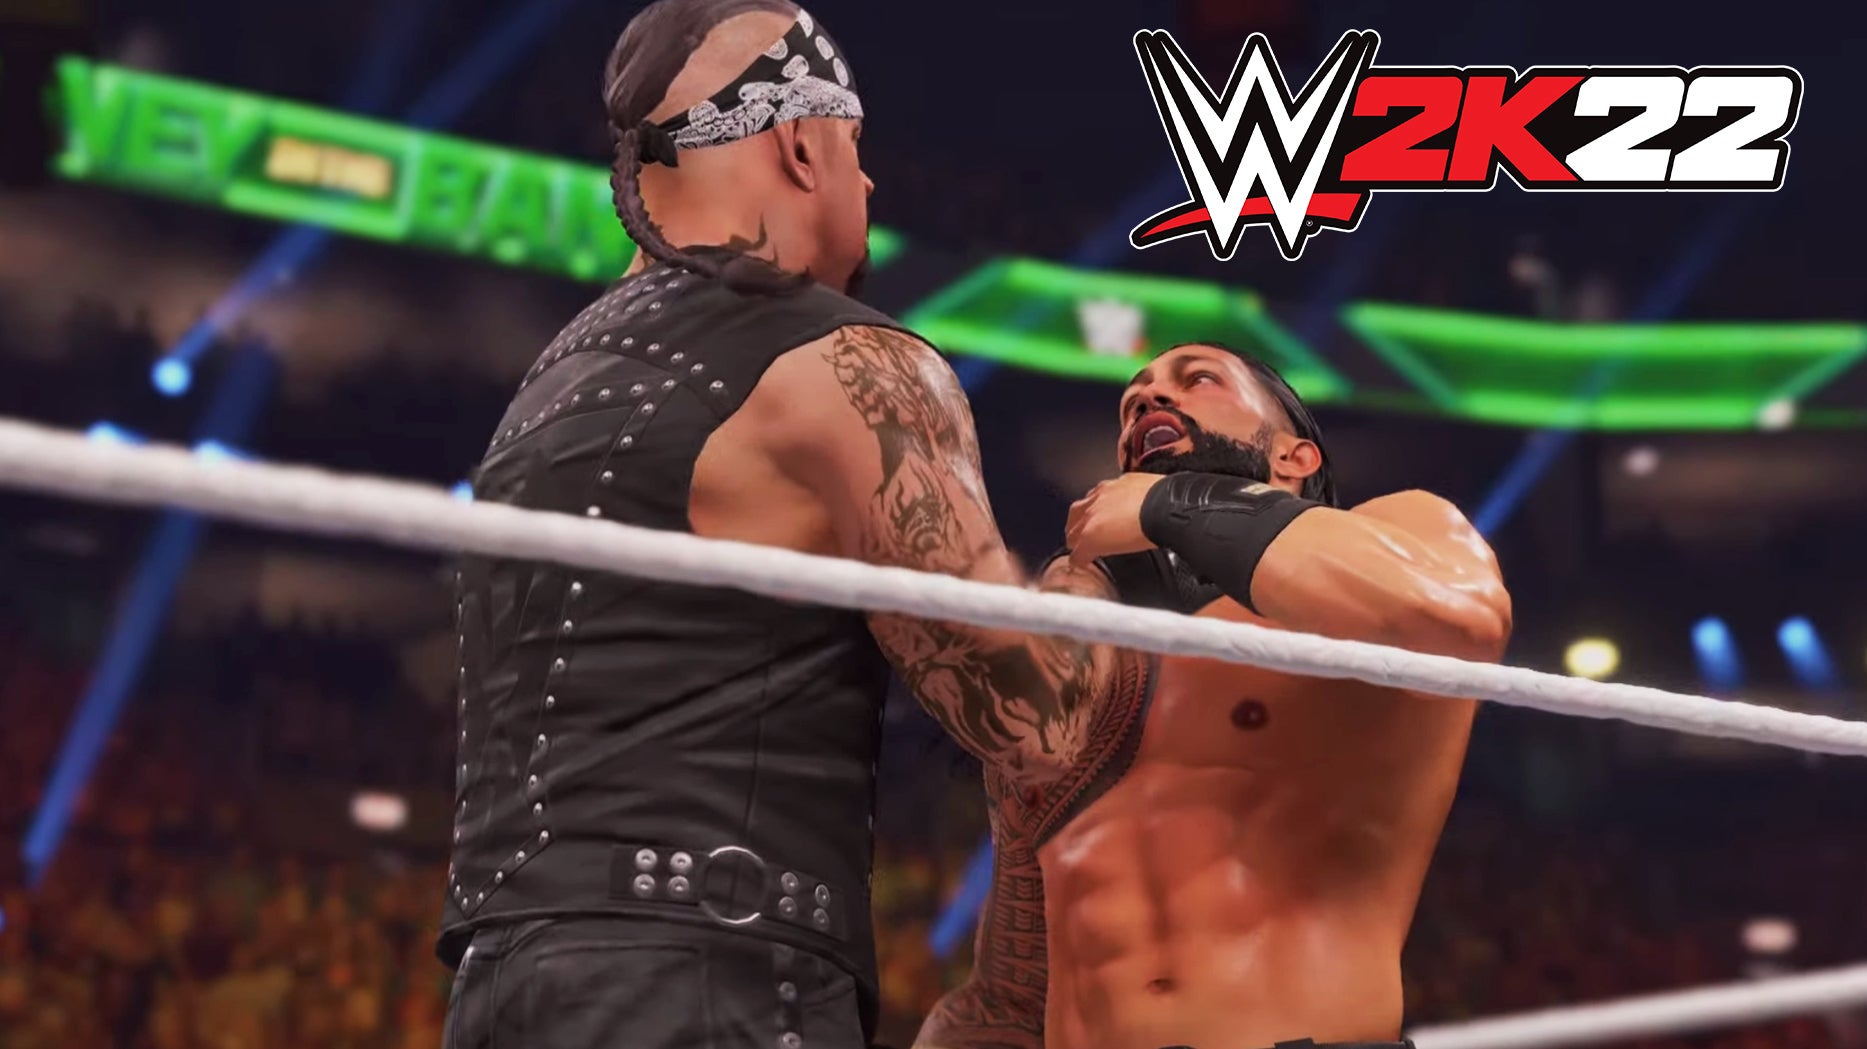 Imagem para WWE 2K22 - Vê como está o jogo na PS5 neste gameplay